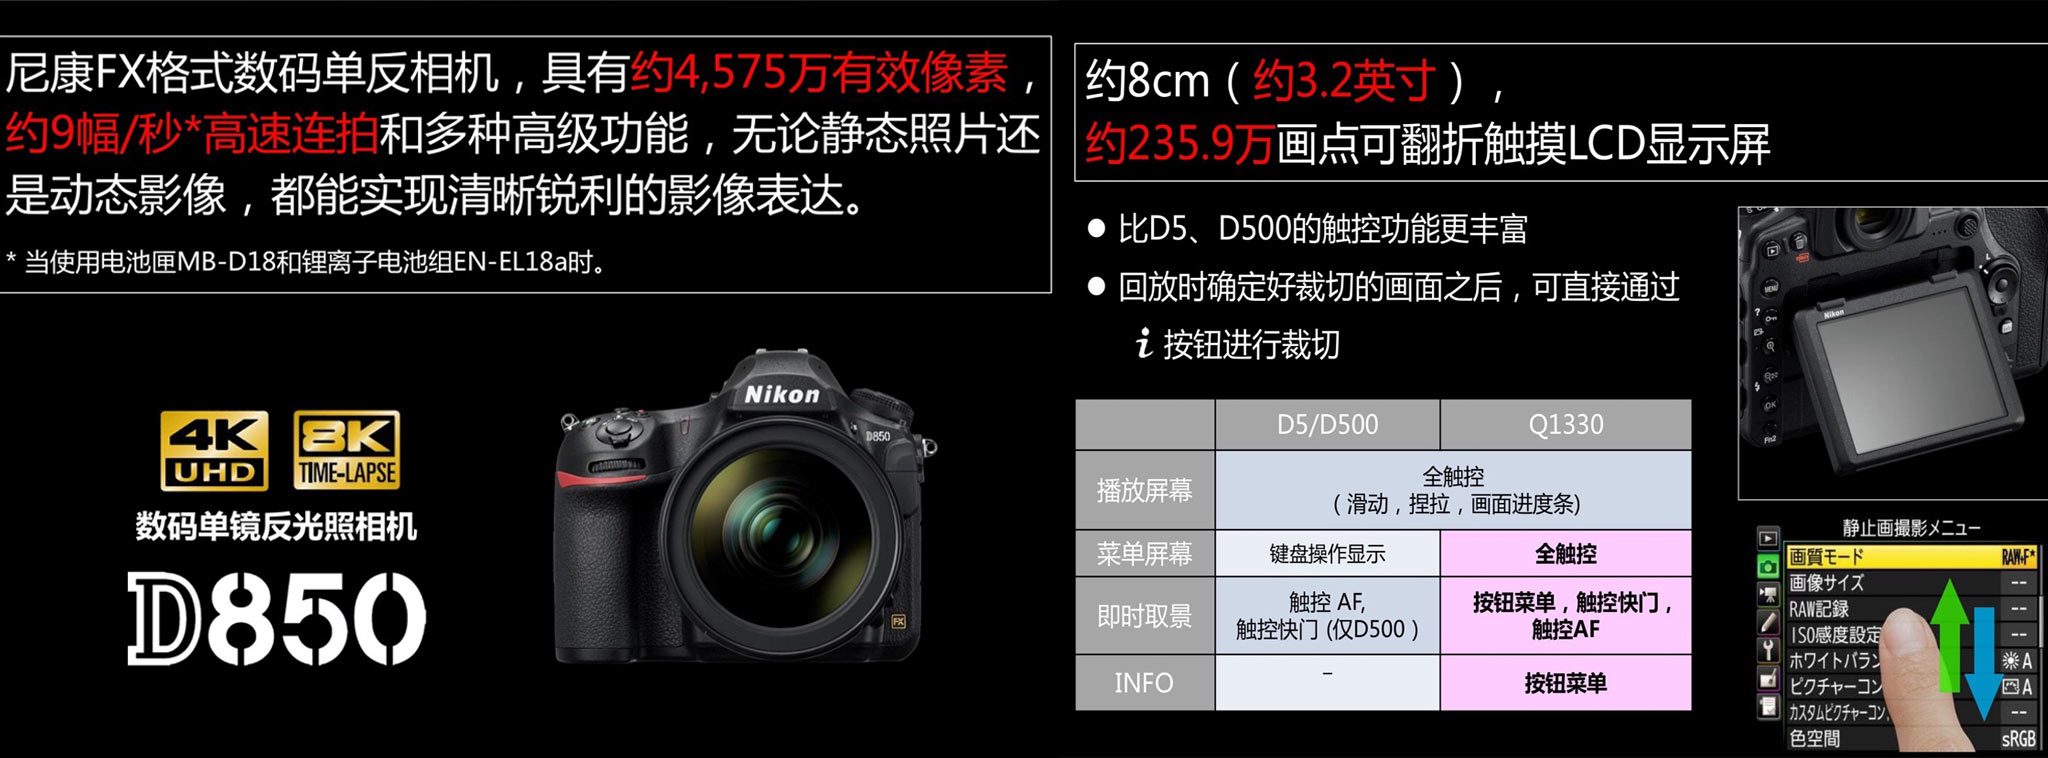 Nikon D850 bị lộ slide trình chiếu, thông số giống với những rò rỉ gần đây